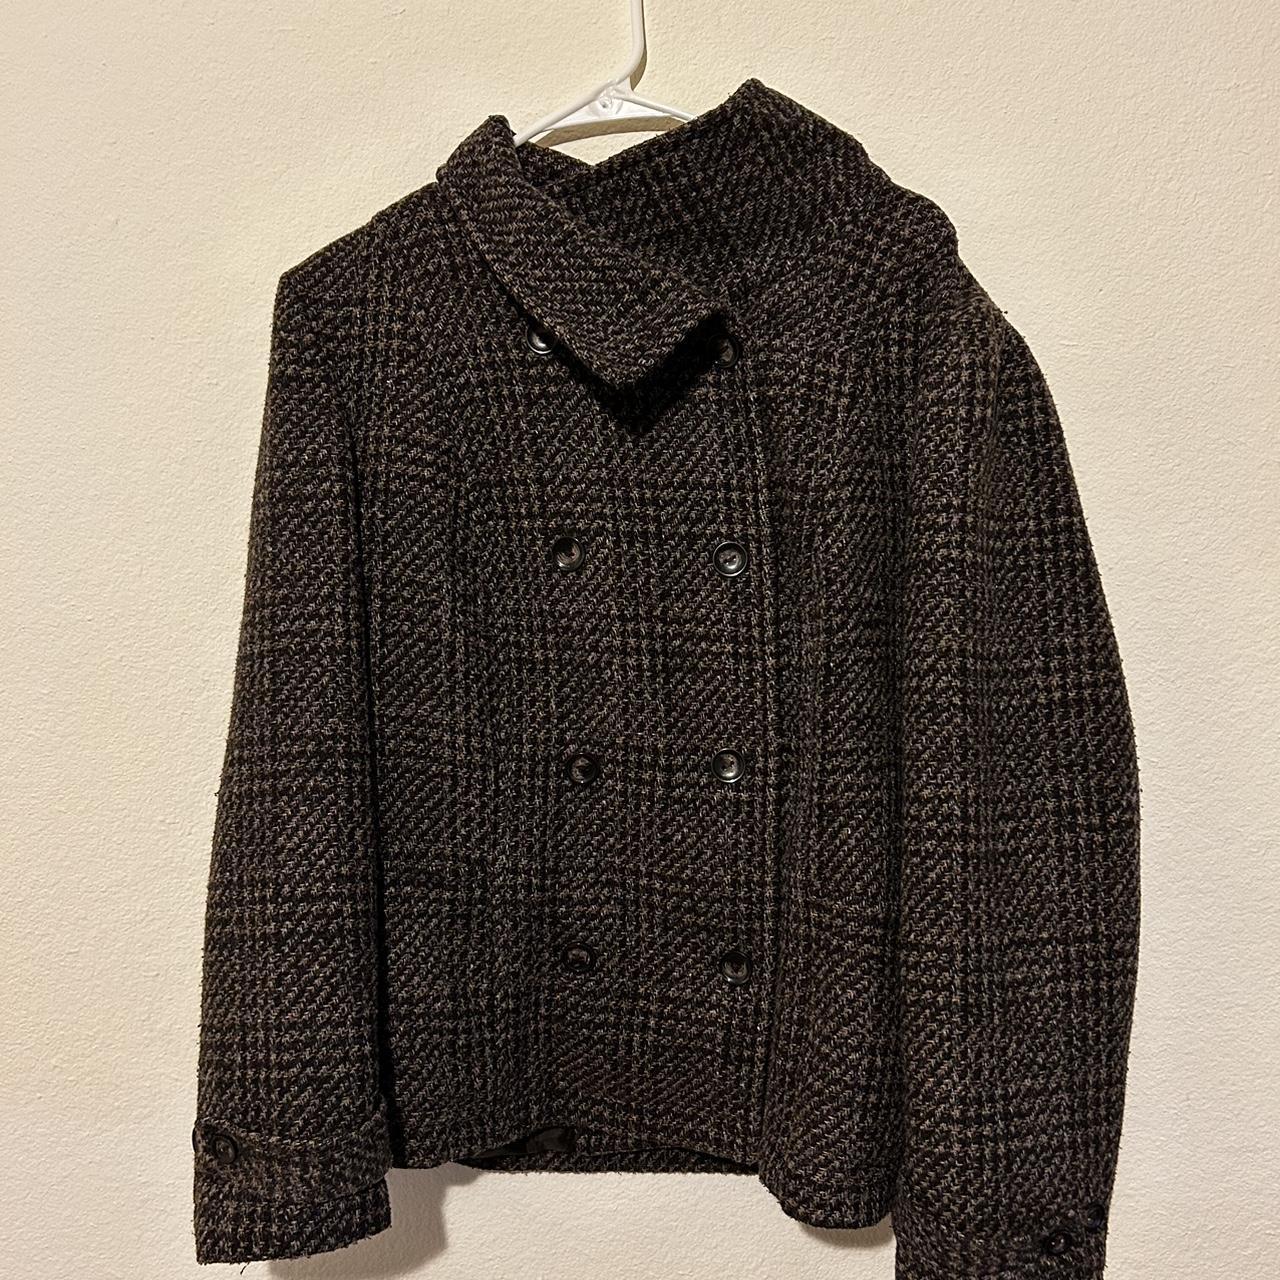 Vintage Wool Jacket/Coat Beautiful vintage wool... - Depop